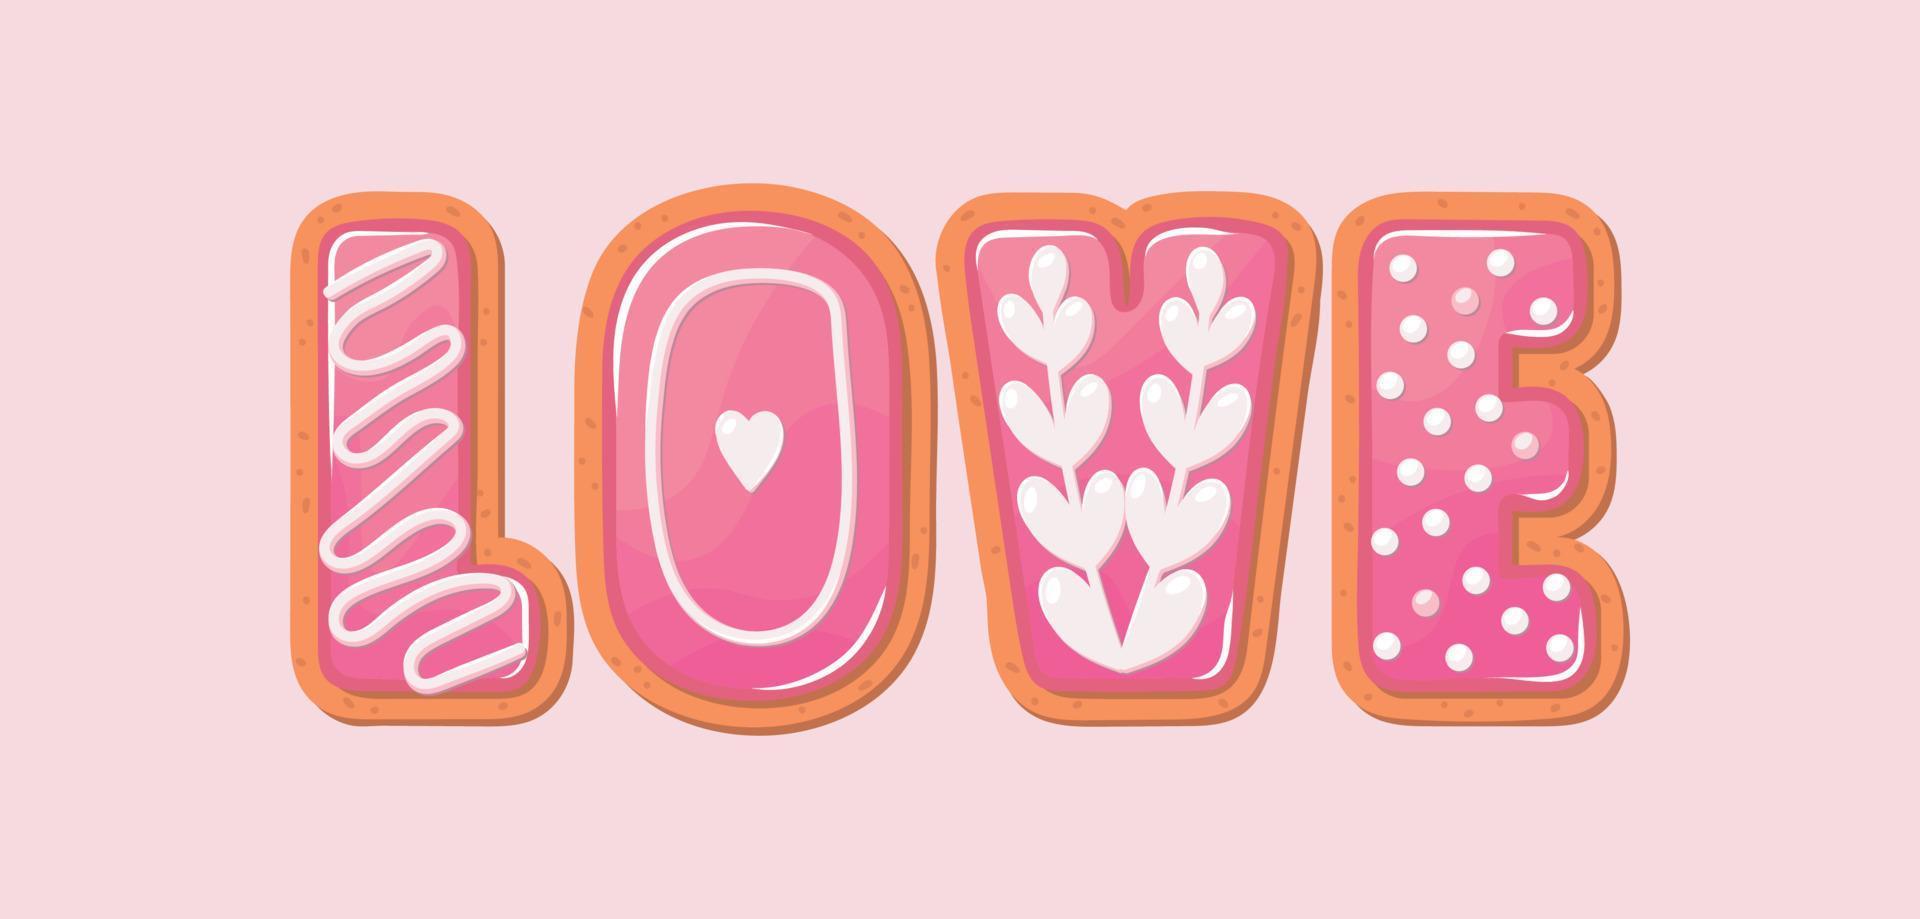 San Valentino decorato con biscotti set di illustrazioni vettoriali. lettere a velo. vettore